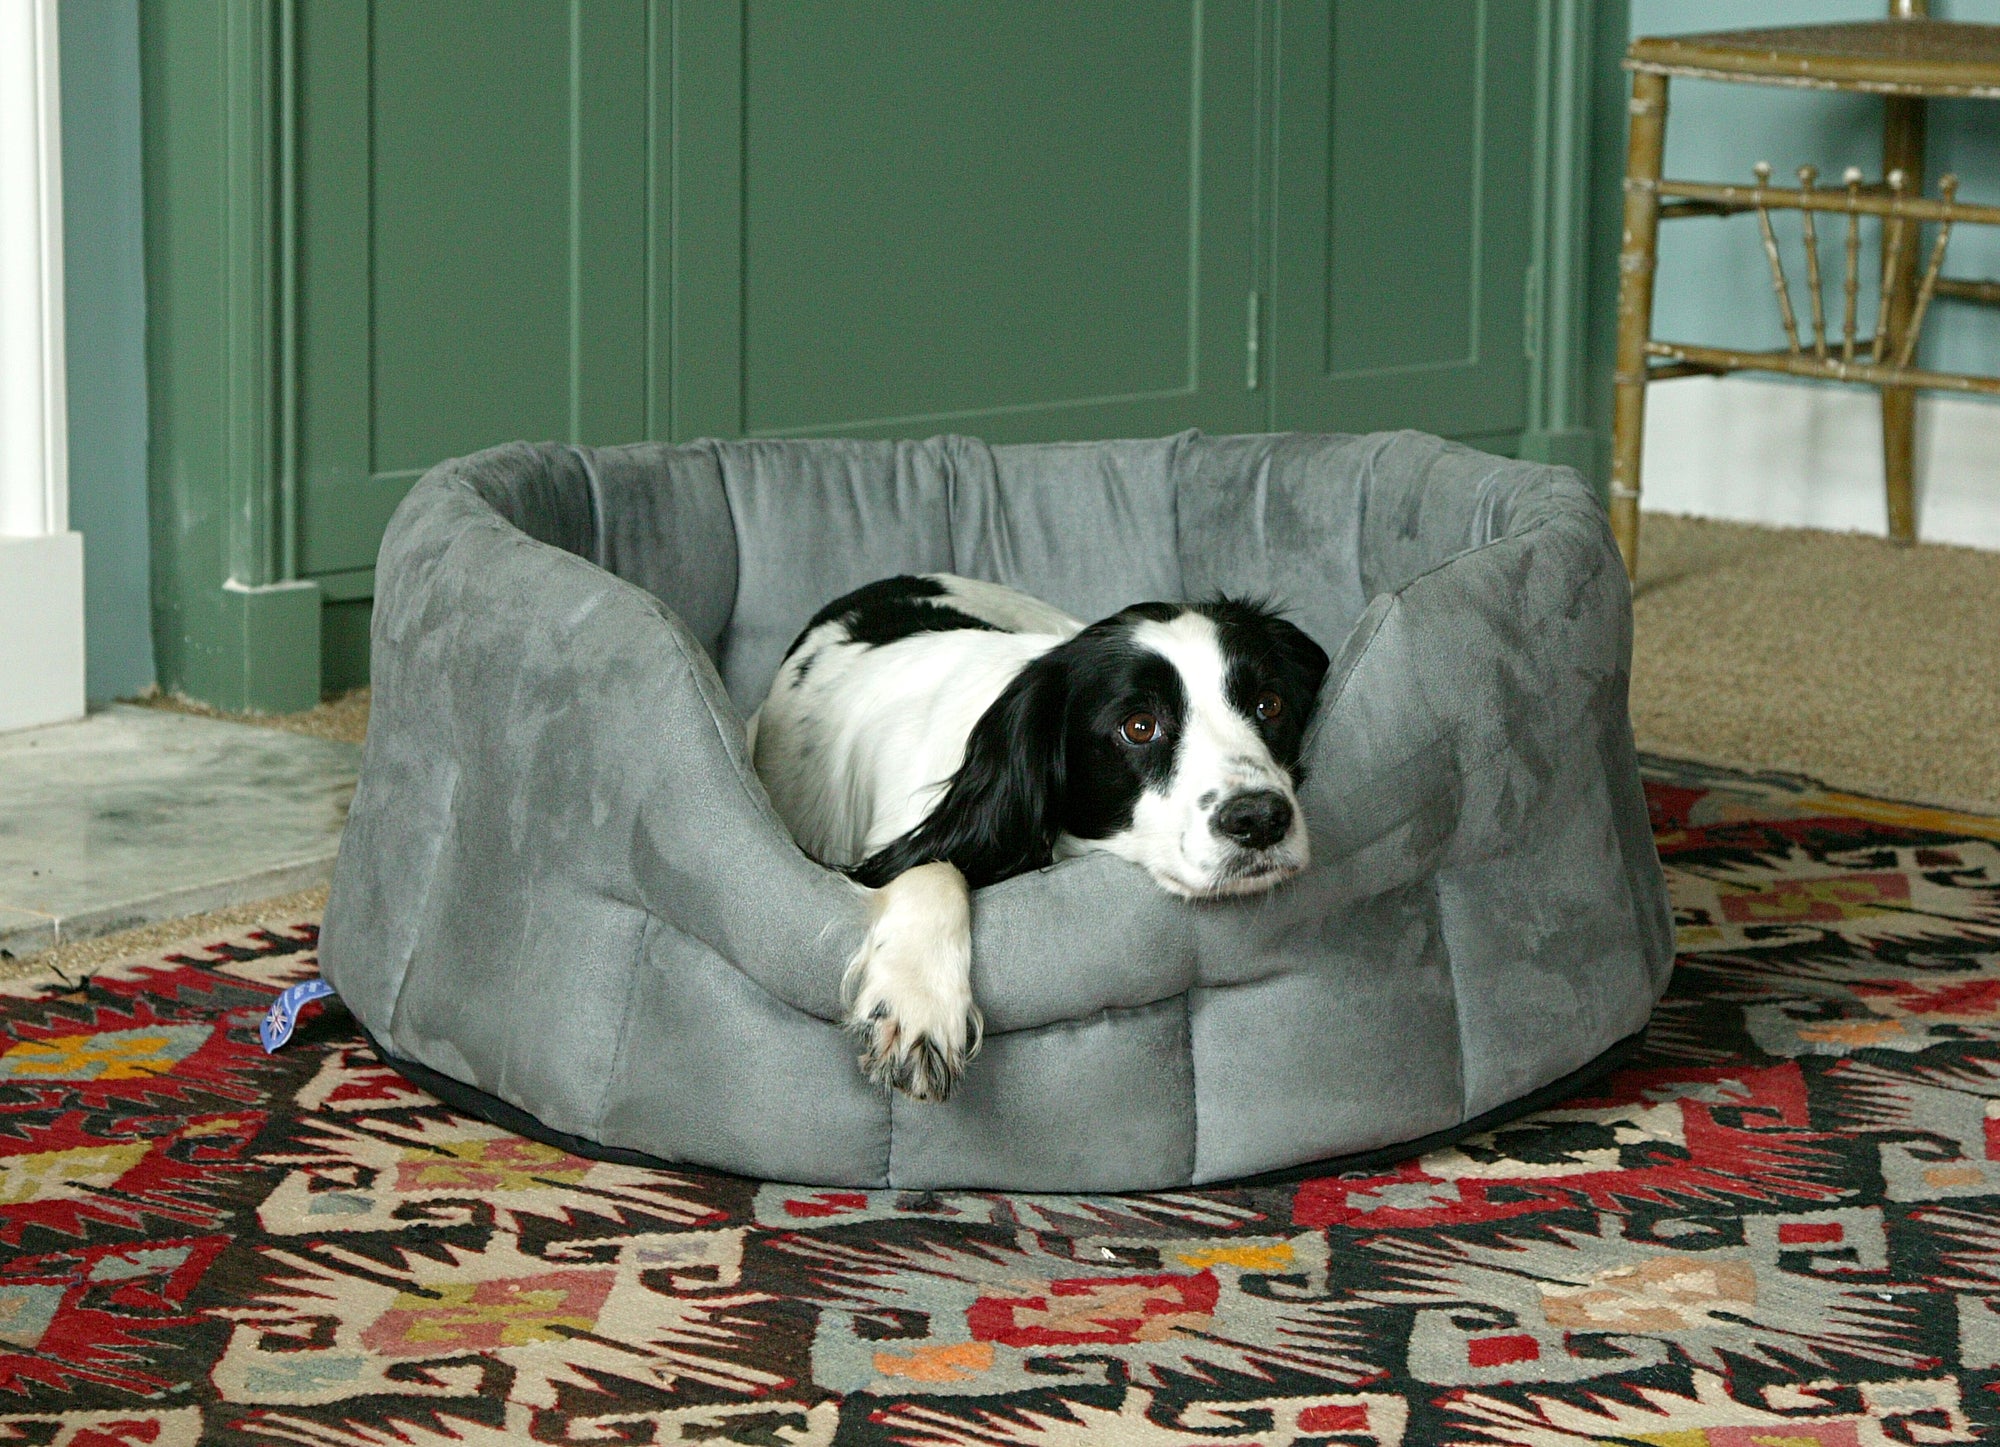 Choosing your dog's bed - Waterproof, Fur, Faux Suede or even Fleece